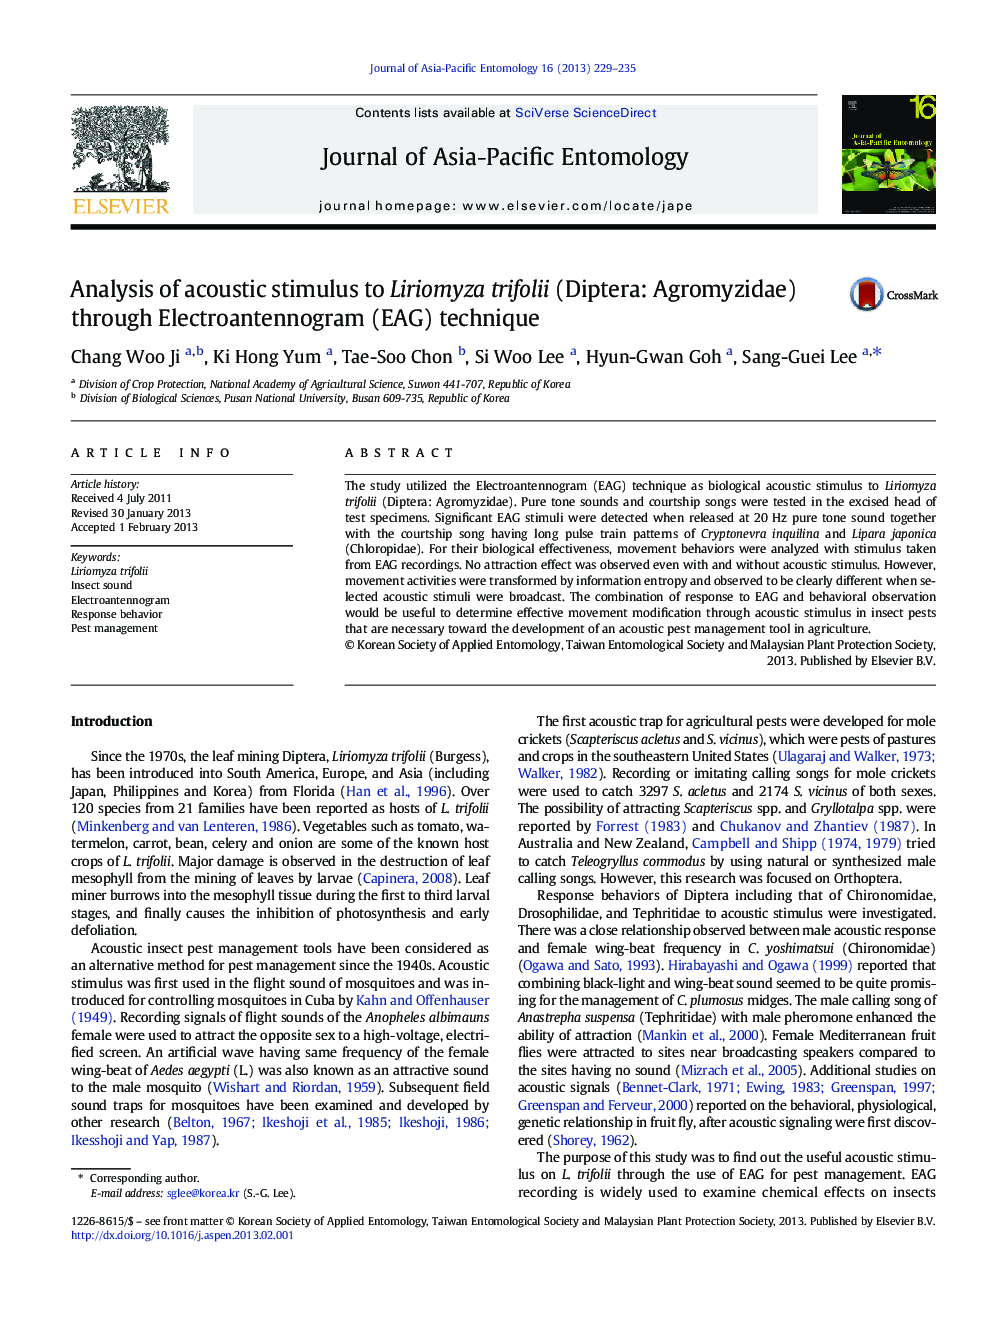 Analysis of acoustic stimulus to Liriomyza trifolii (Diptera: Agromyzidae) through Electroantennogram (EAG) technique